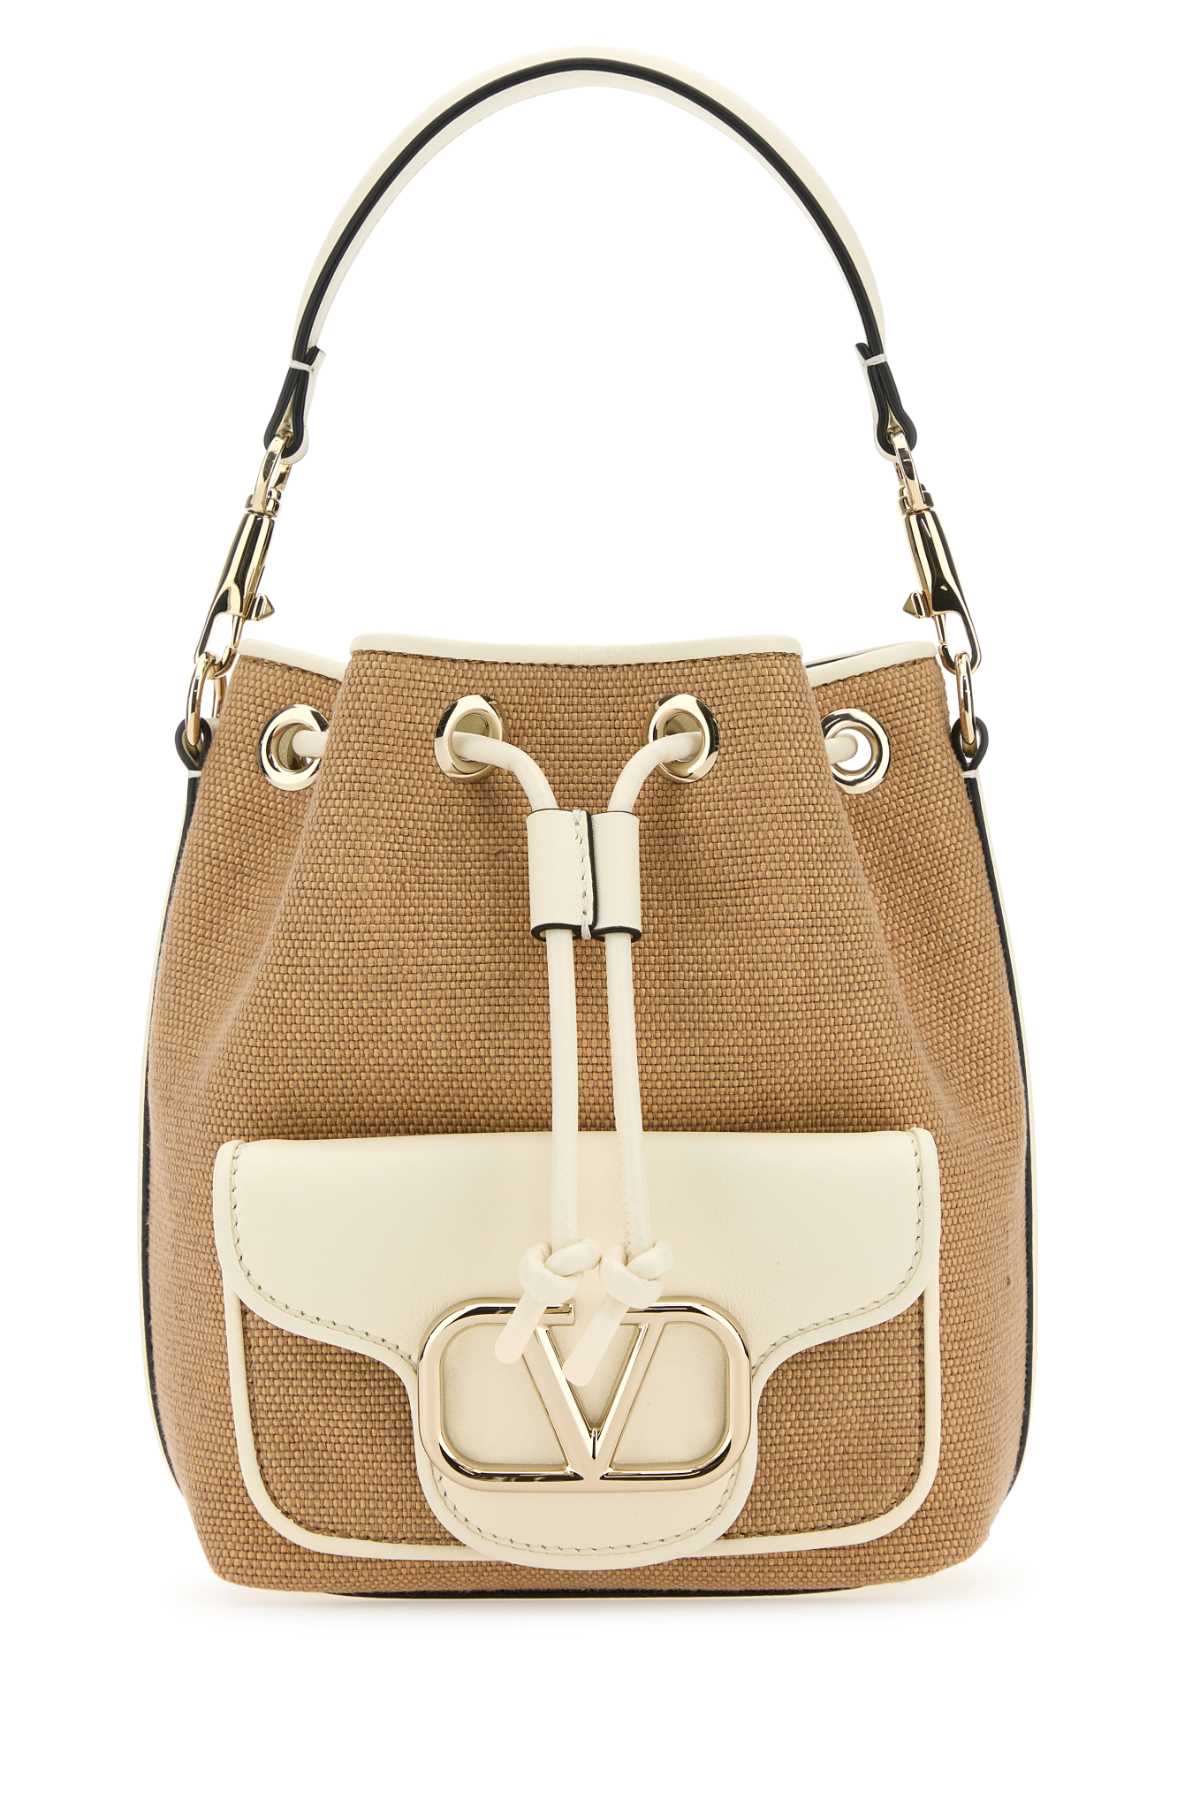 Valentino Garavani Two-tone Raffia Leather Locã² Bucket Bag In Brown